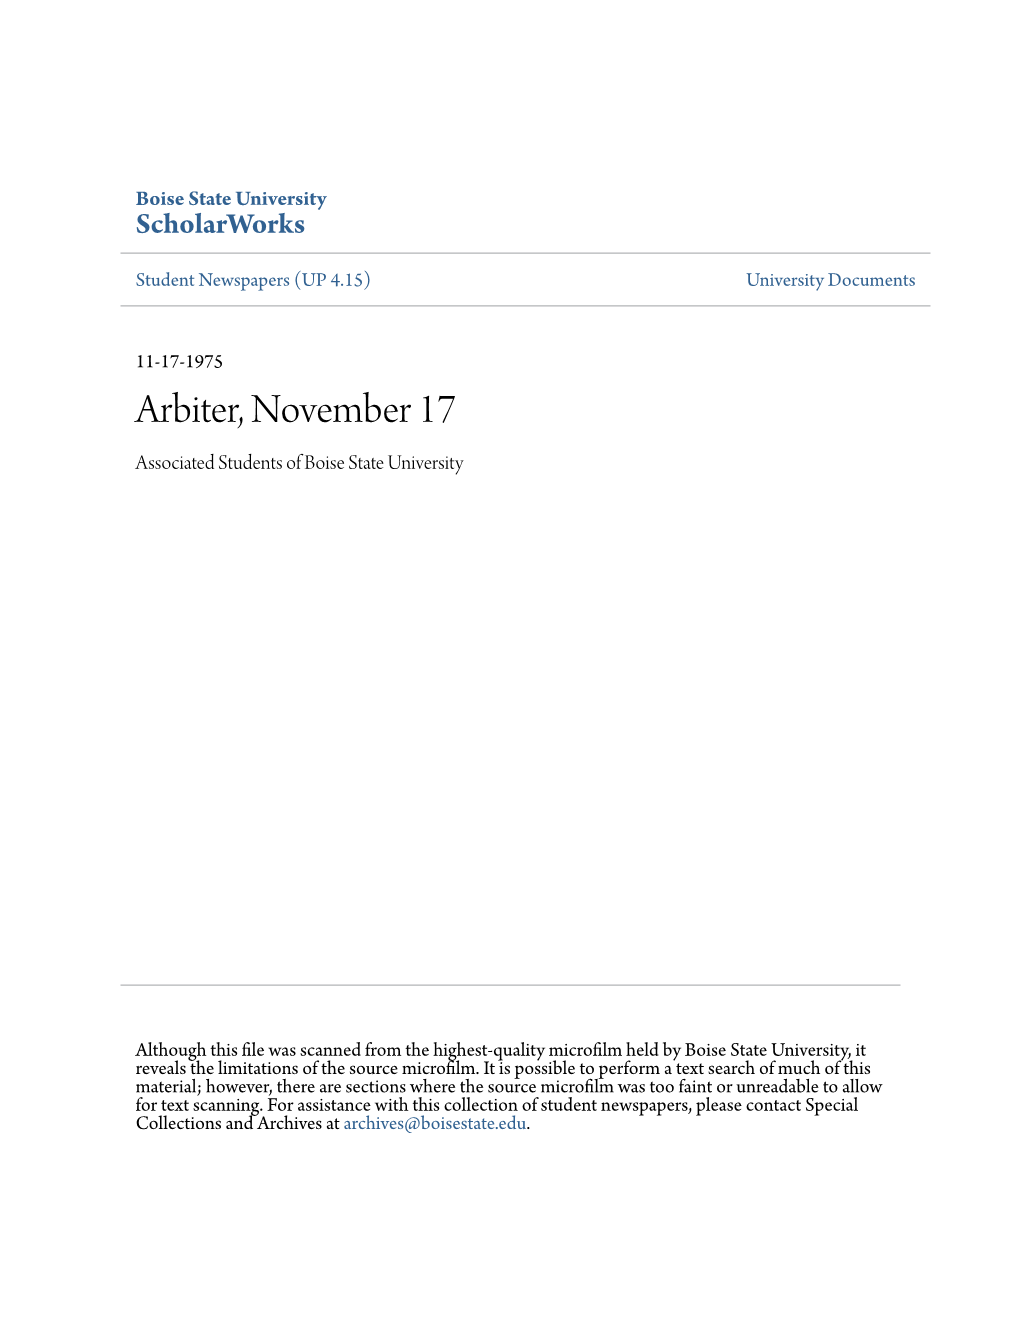 Arbiter, November 17 Associated Students of Boise State University